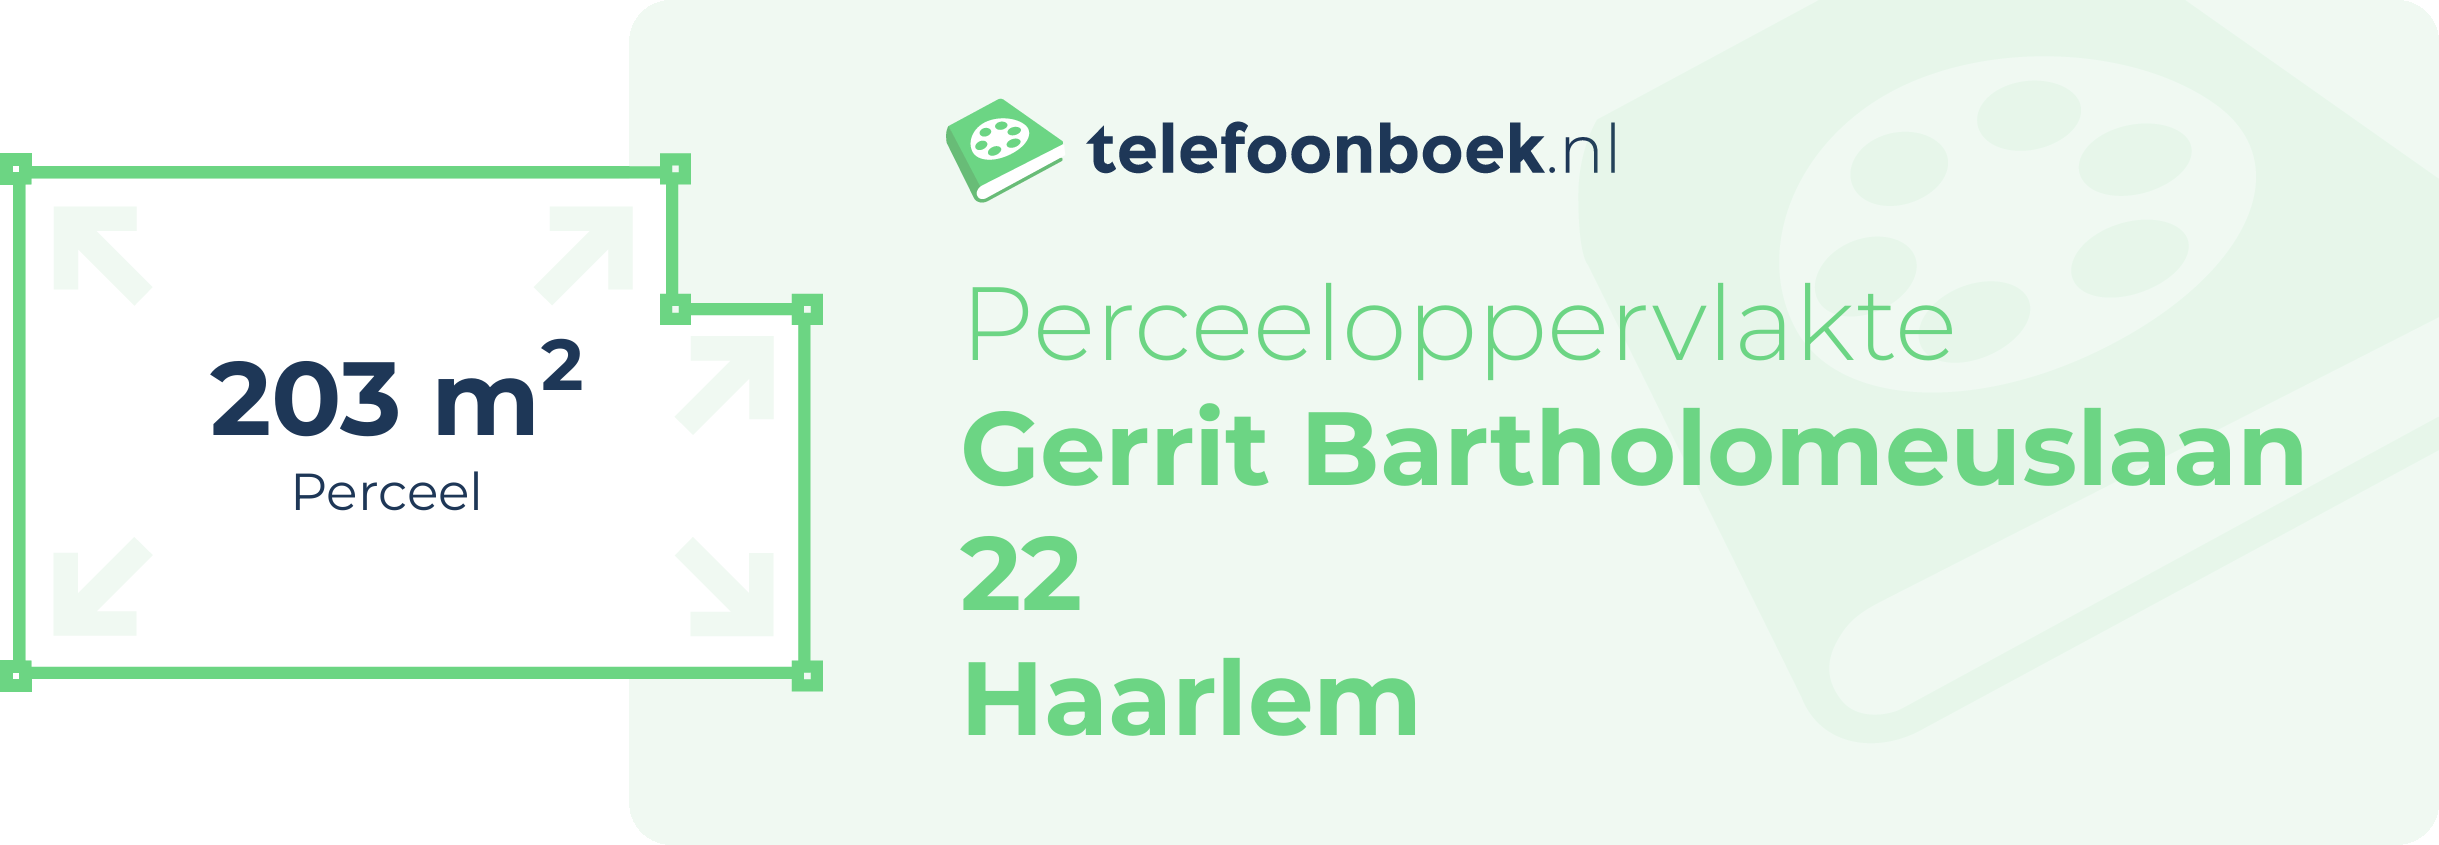 Perceeloppervlakte Gerrit Bartholomeuslaan 22 Haarlem